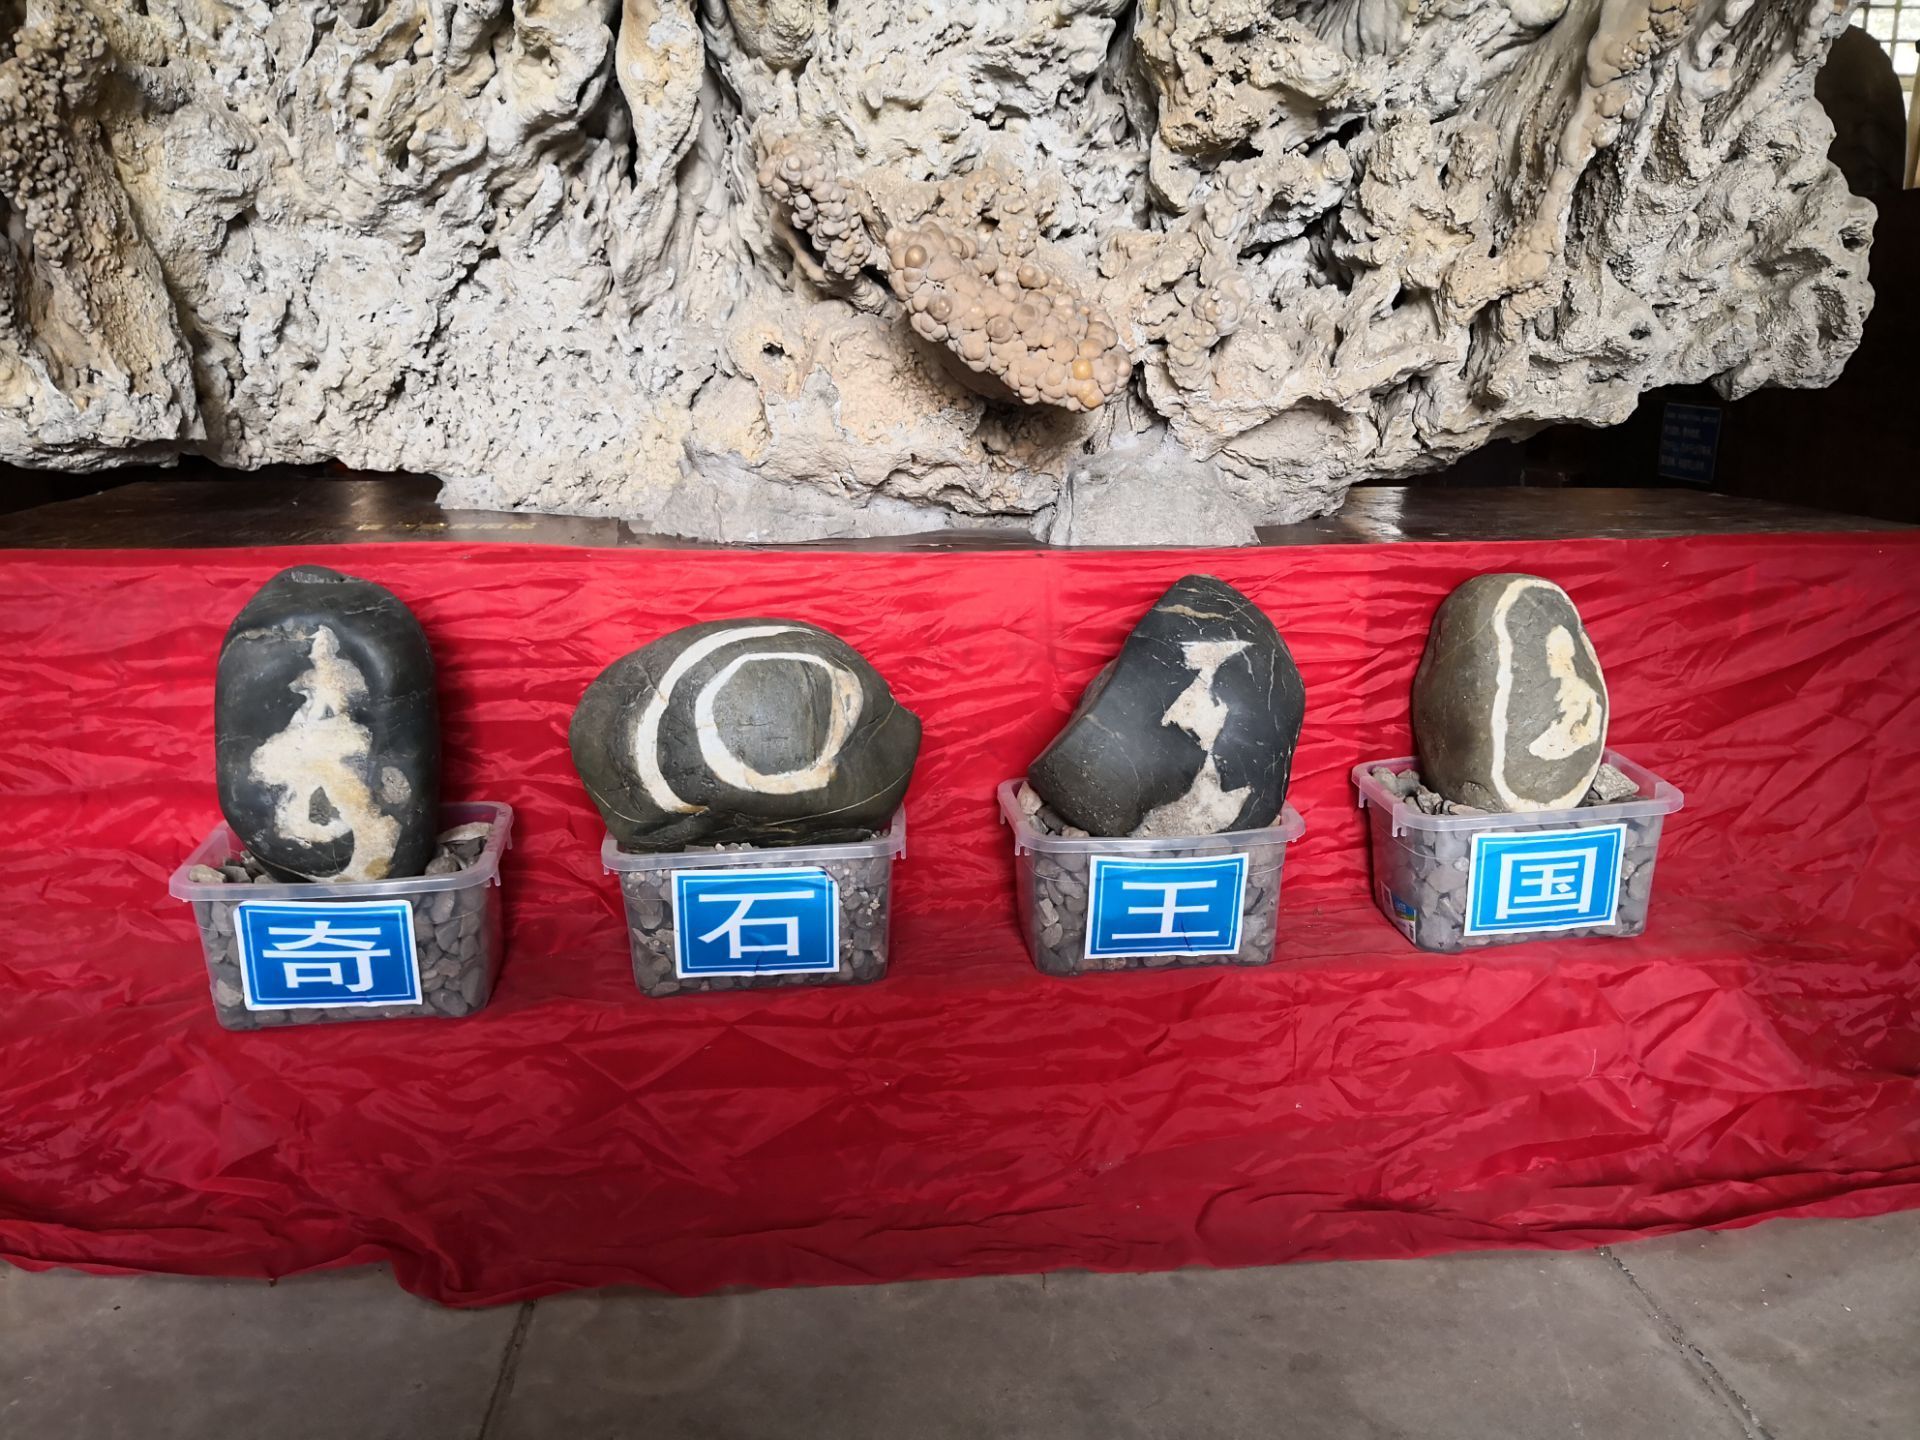 贵州省地质博物馆